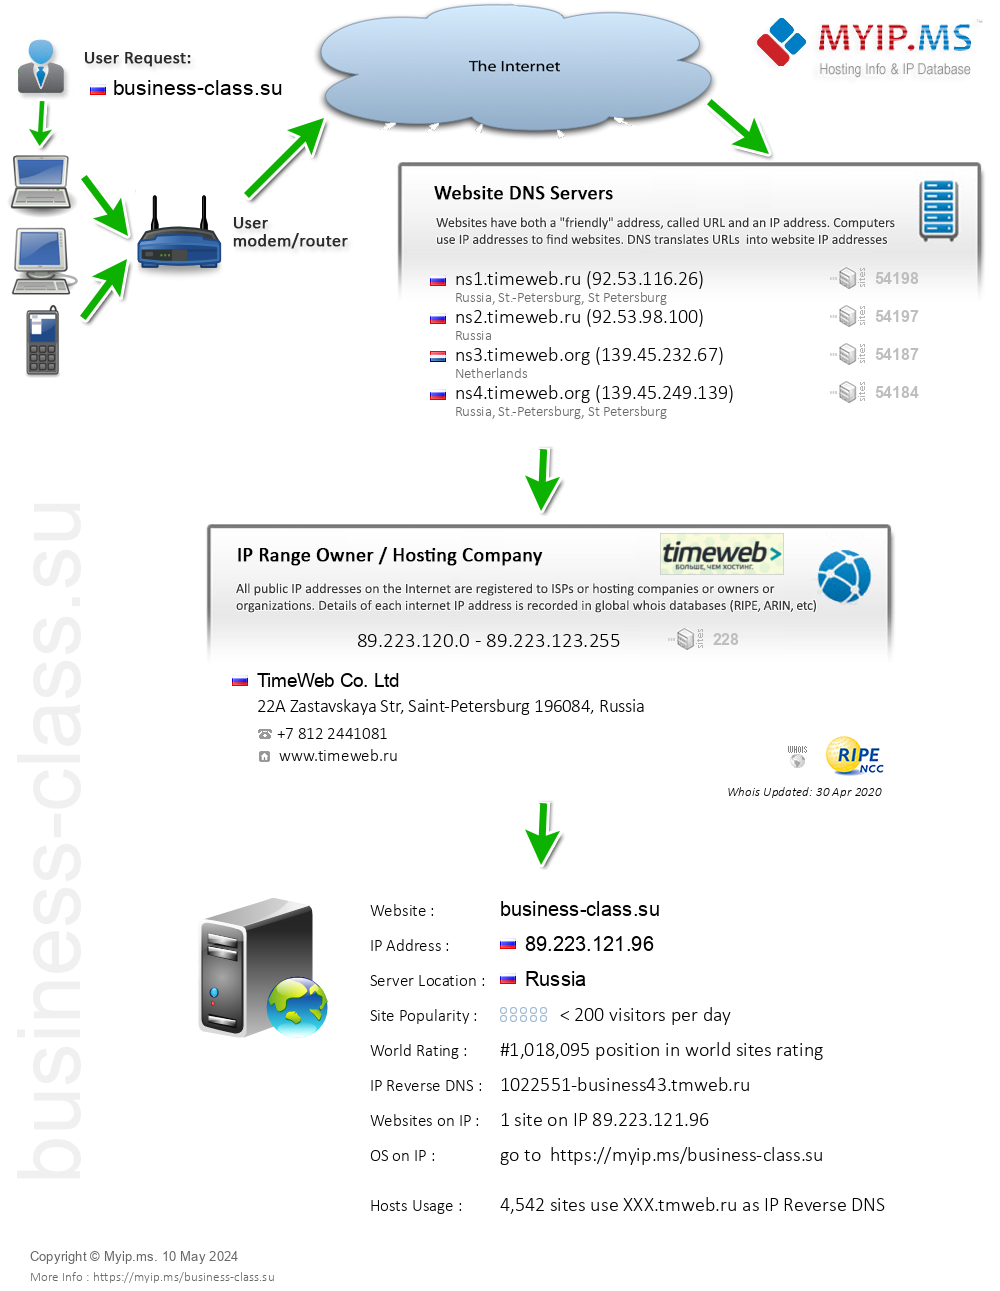 Business-class.su - Website Hosting Visual IP Diagram